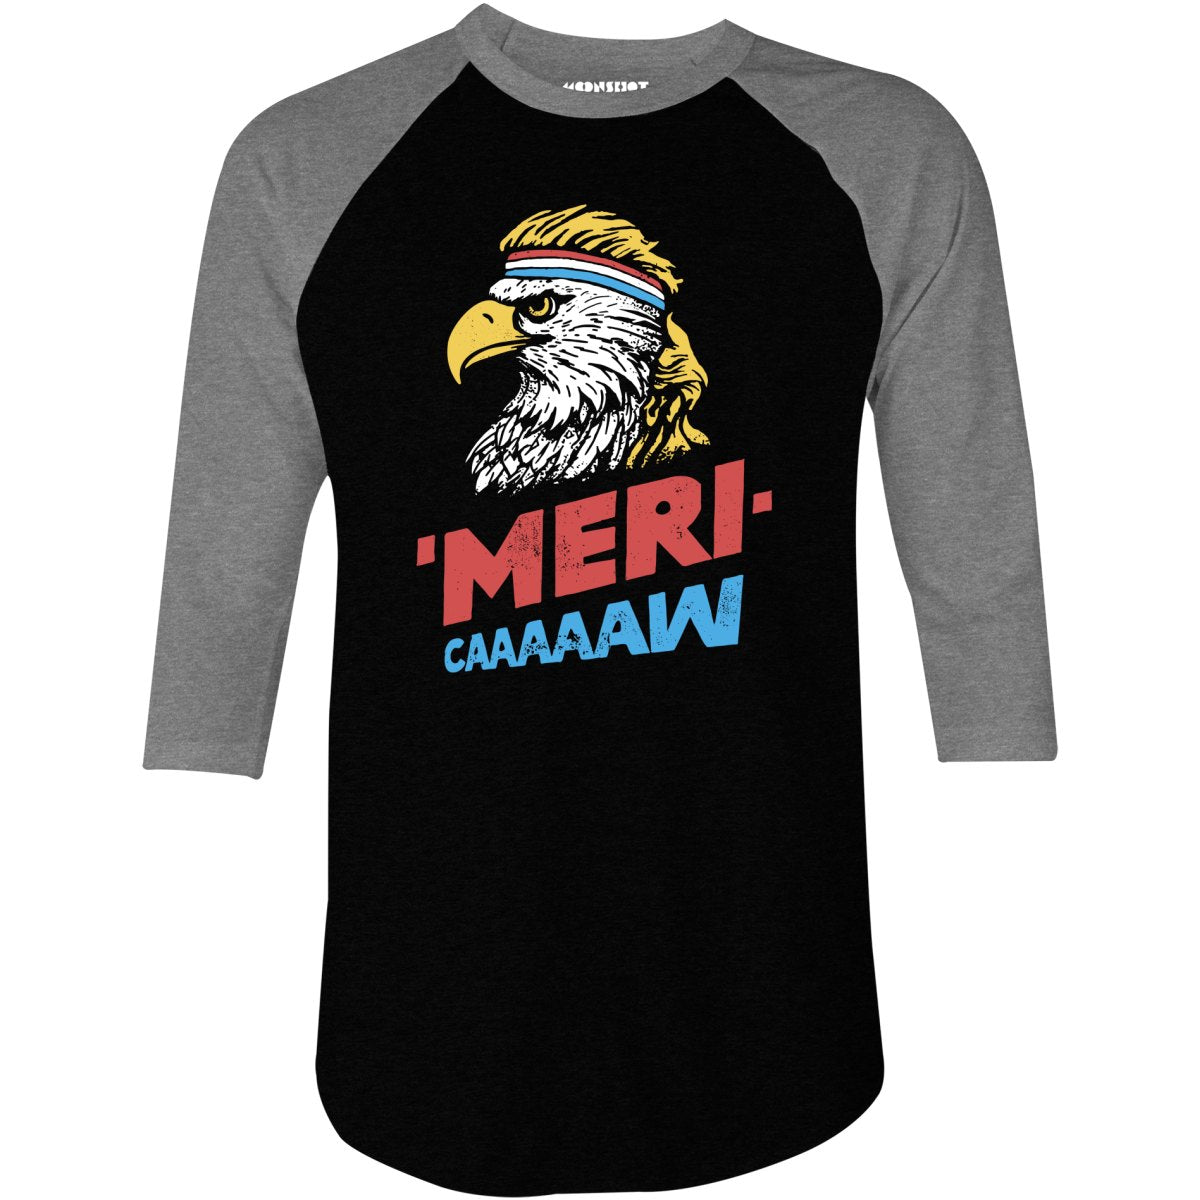 Meri-caaaaaw - 3/4 Sleeve Raglan T-Shirt